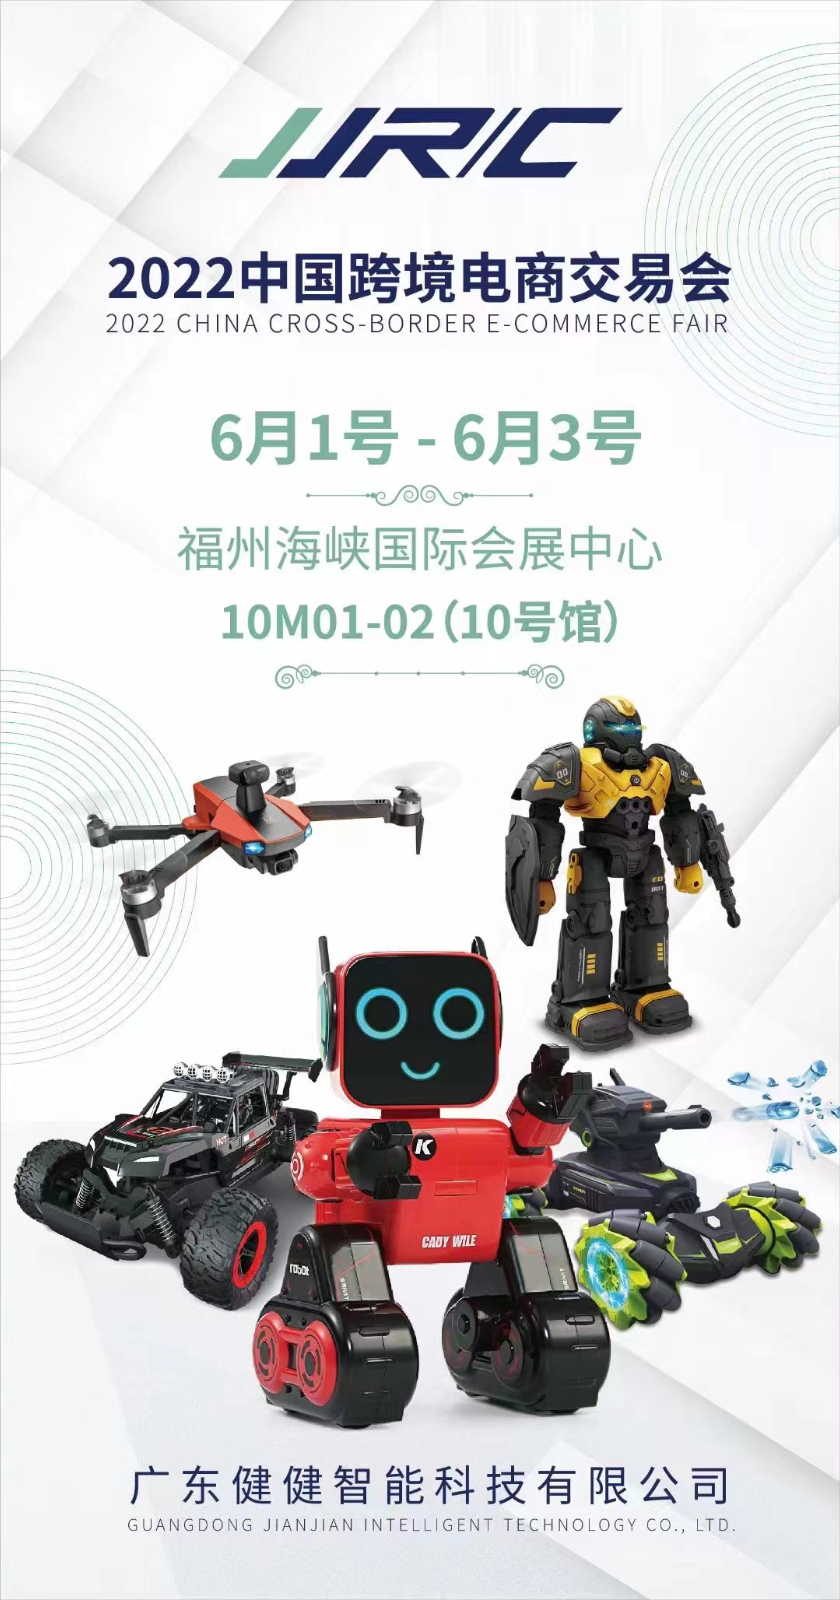 参展动态| 健健玩具将参加2022中国跨境电商展会